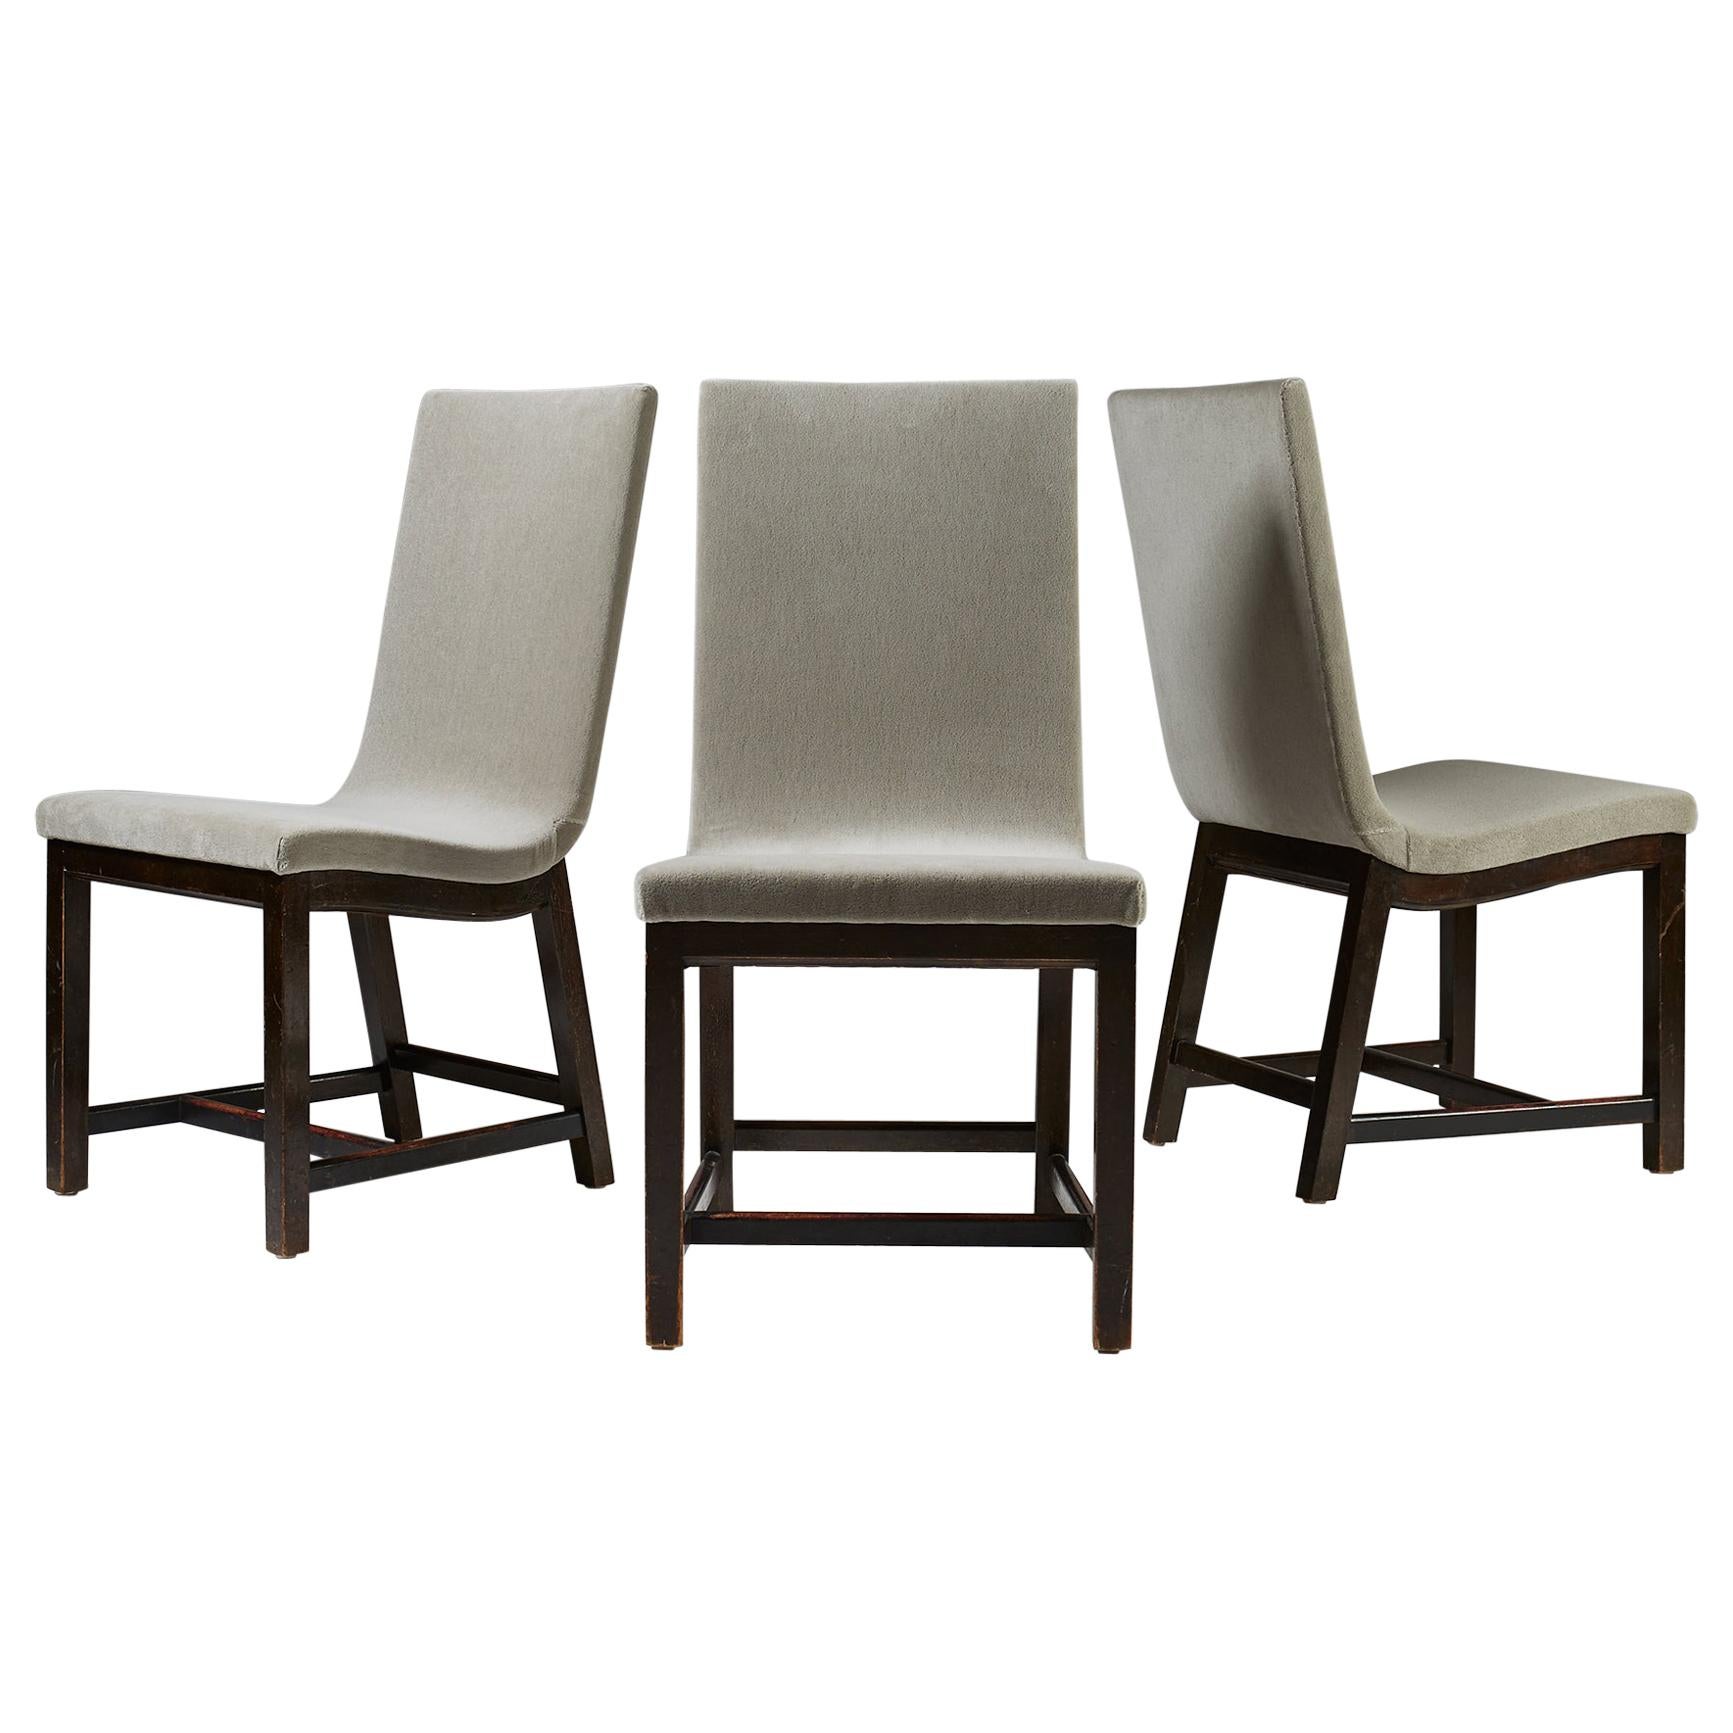 Set of Three Chairs “Typenko” by Axel Einar Hjorth, Nordiska Kompaniet, Sweden For Sale